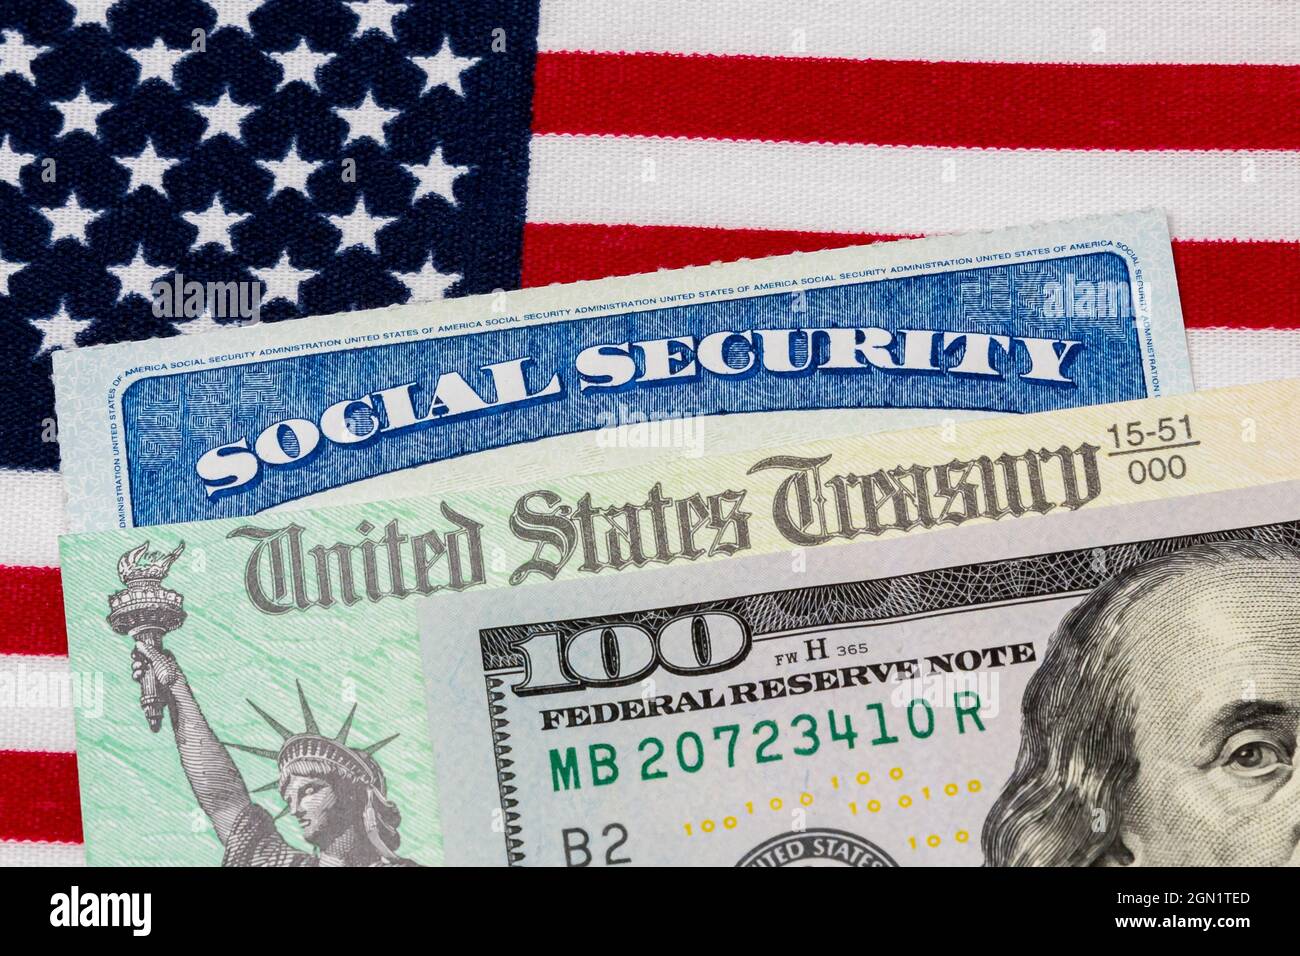 Tarjeta de seguridad social, cheque de tesorería, billete de 100 dólares y bandera estadounidense. Concepto de pago de prestaciones de seguridad social, jubilación y gobierno federal Foto de stock